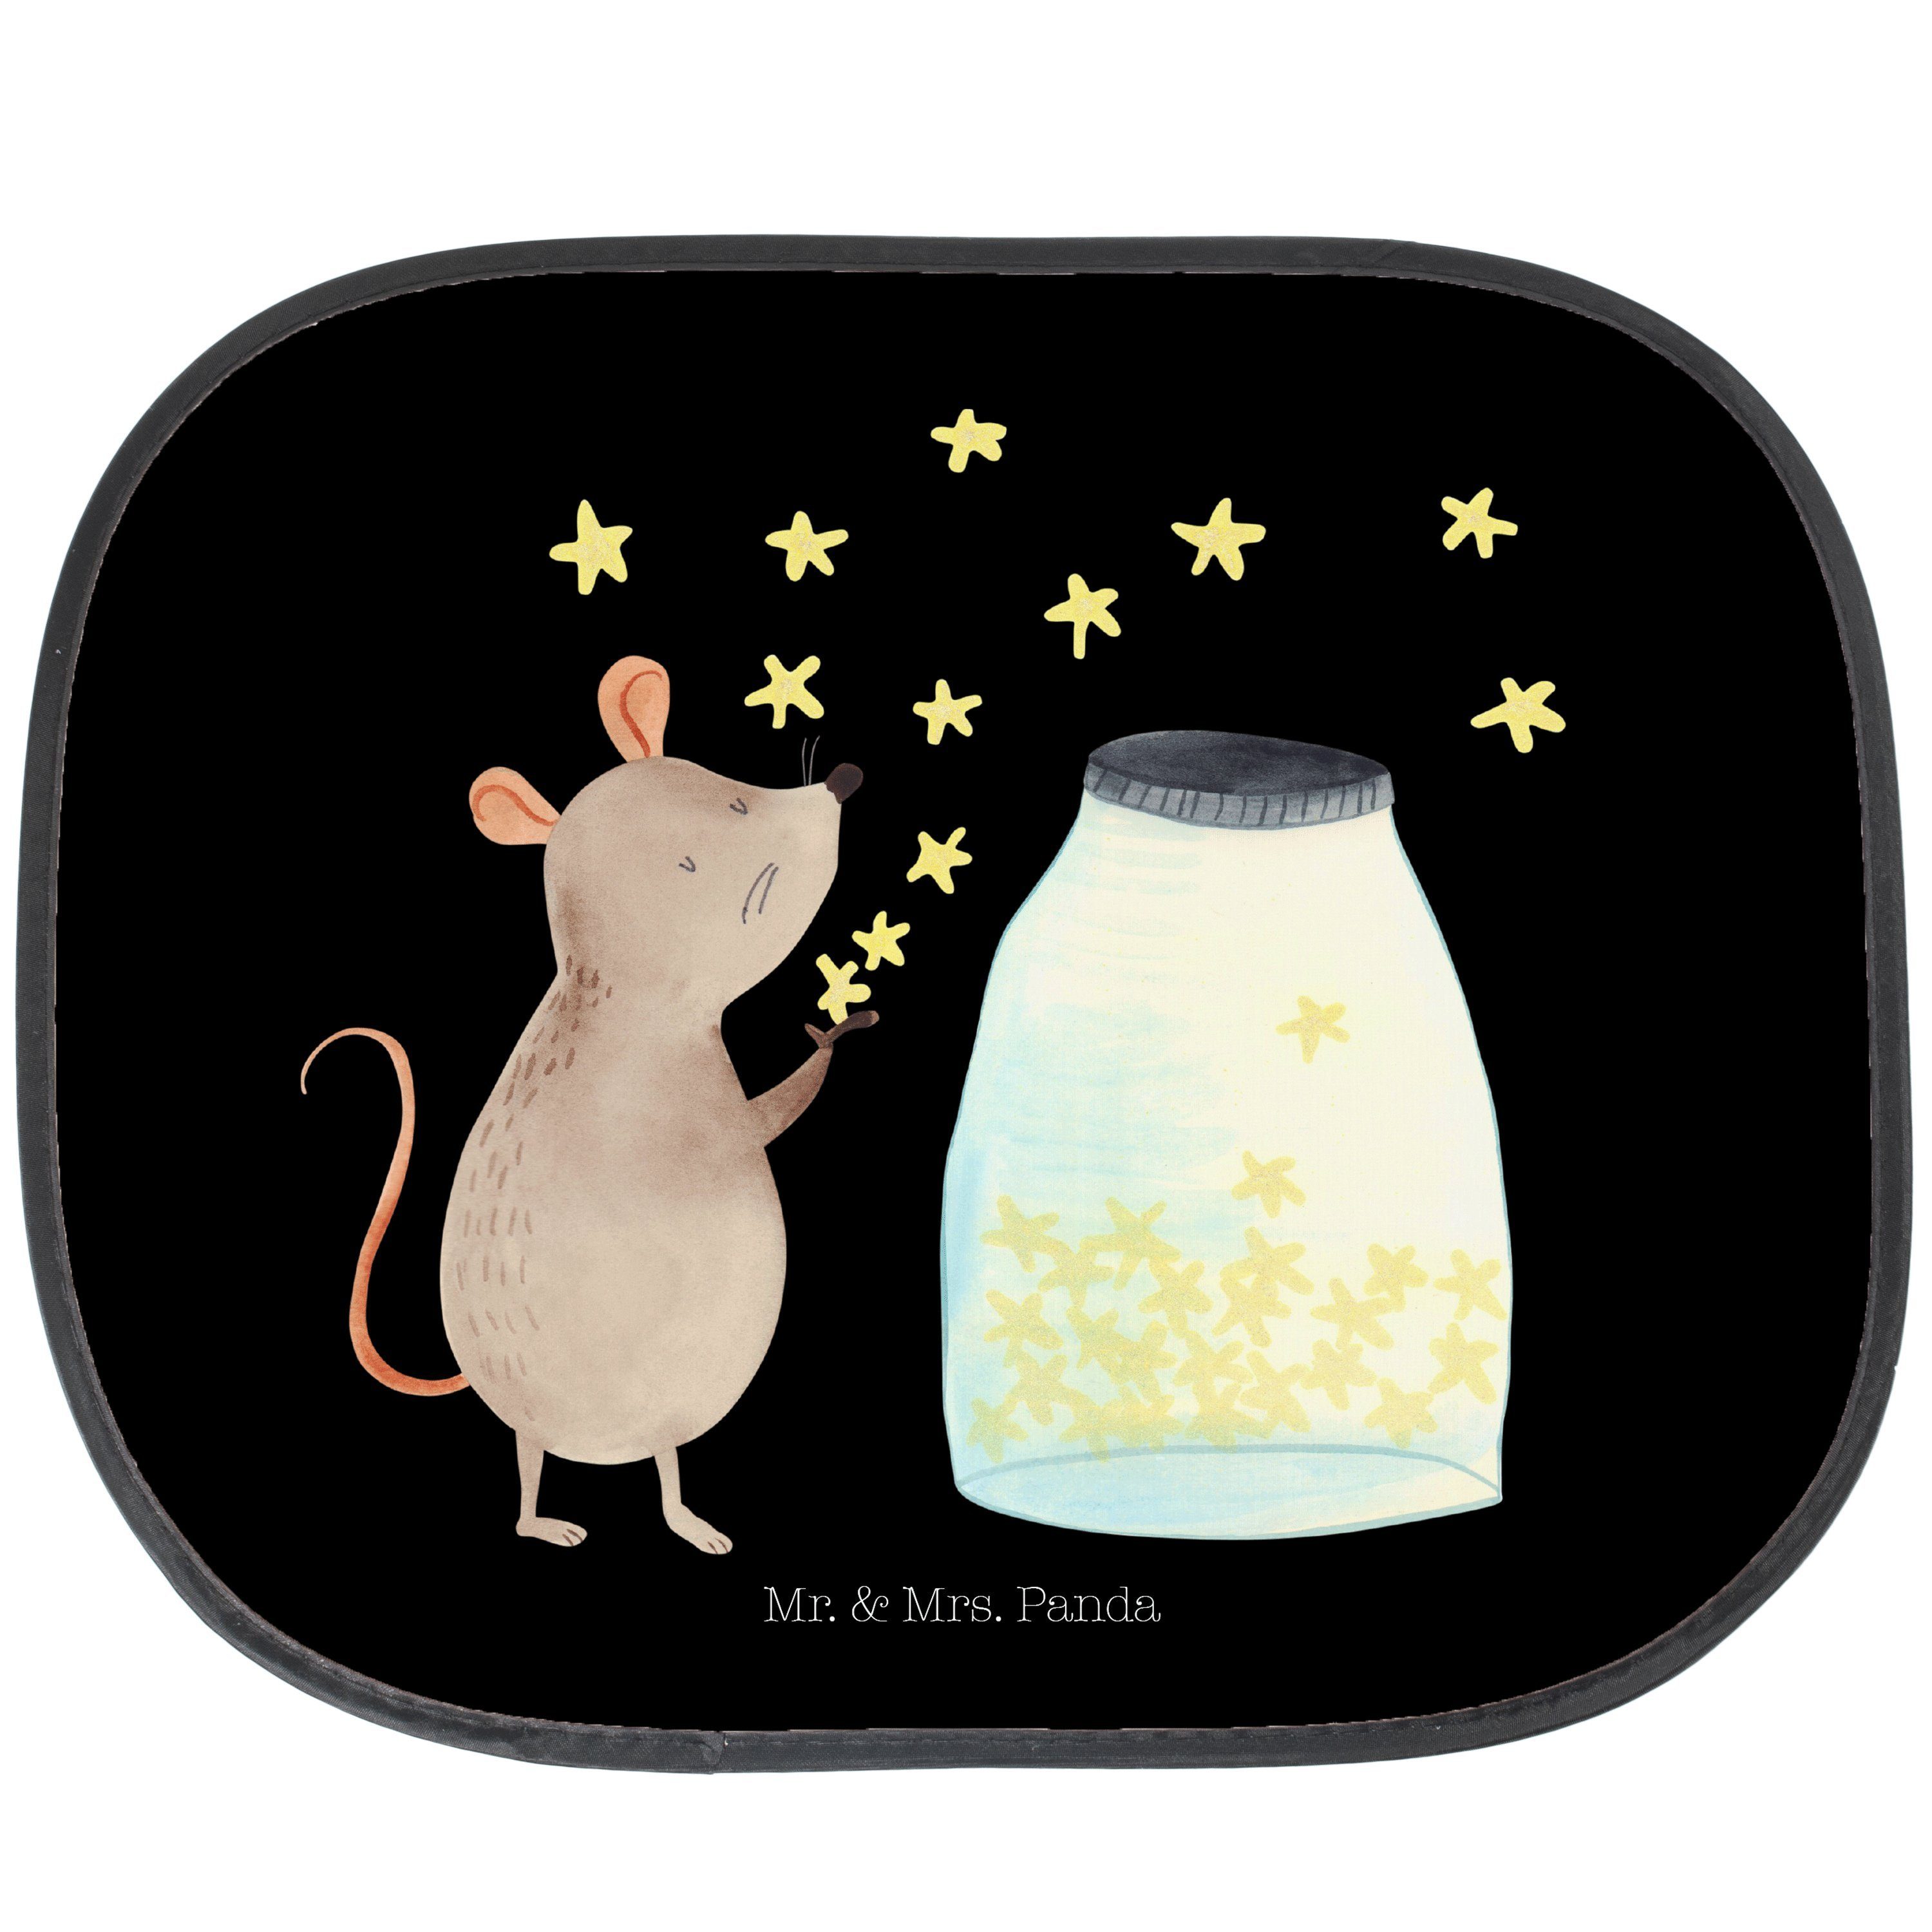 Sonnenschutz Maus Sterne - Schwarz - Geschenk, lustige Sprüche, Sonne, Sonnenschut, Mr. & Mrs. Panda, Seidenmatt